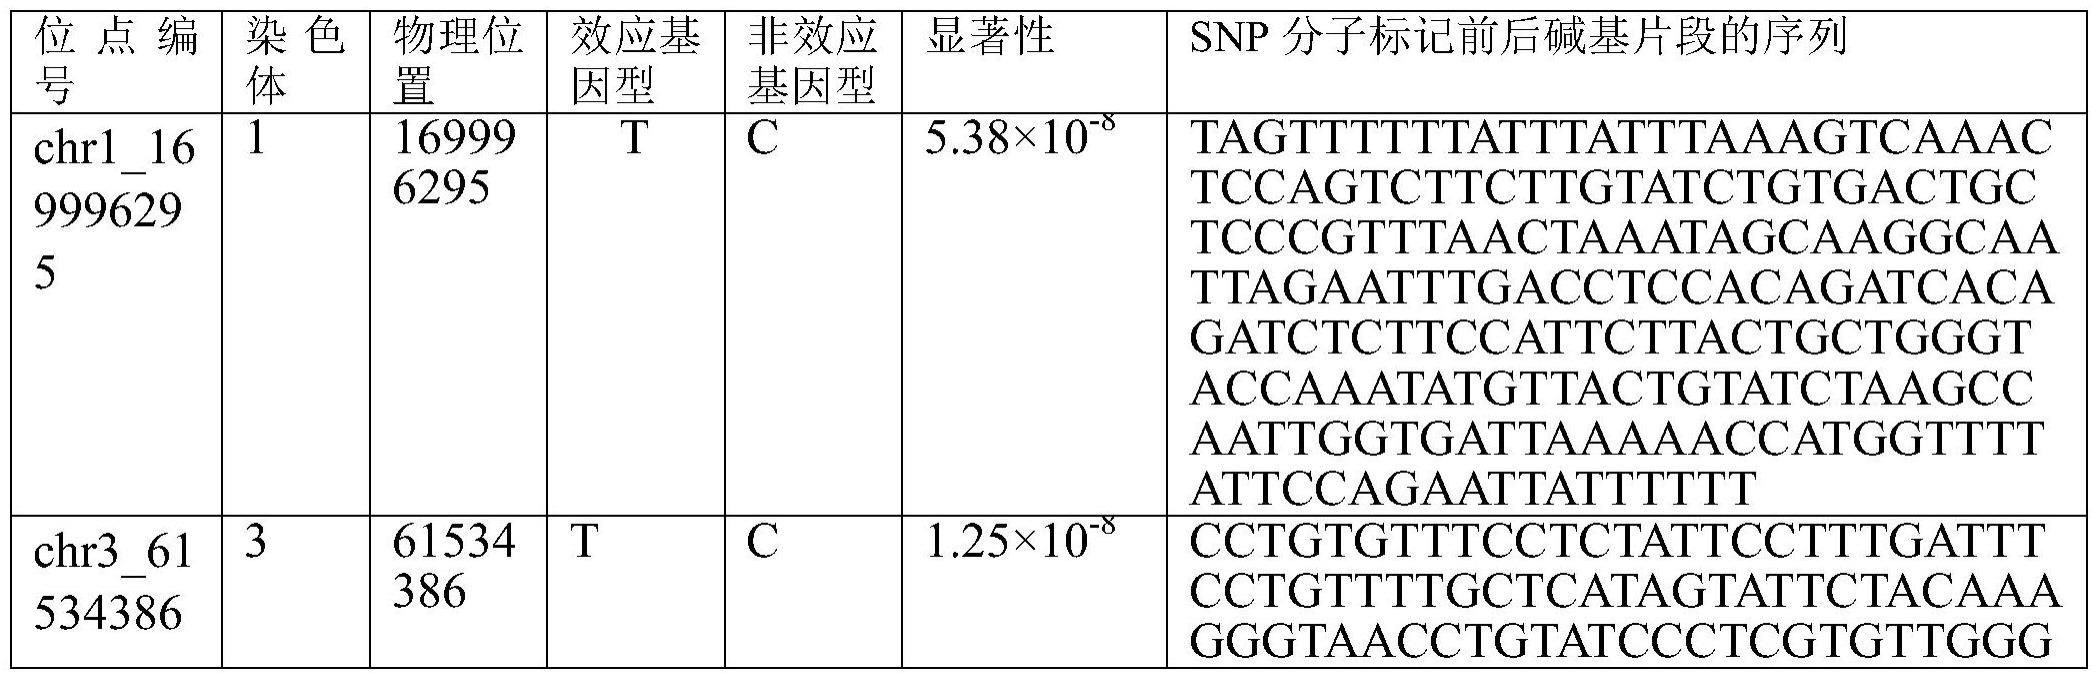 基于全基因组测序筛选的与南丹瑶鸡毛孔数相关的